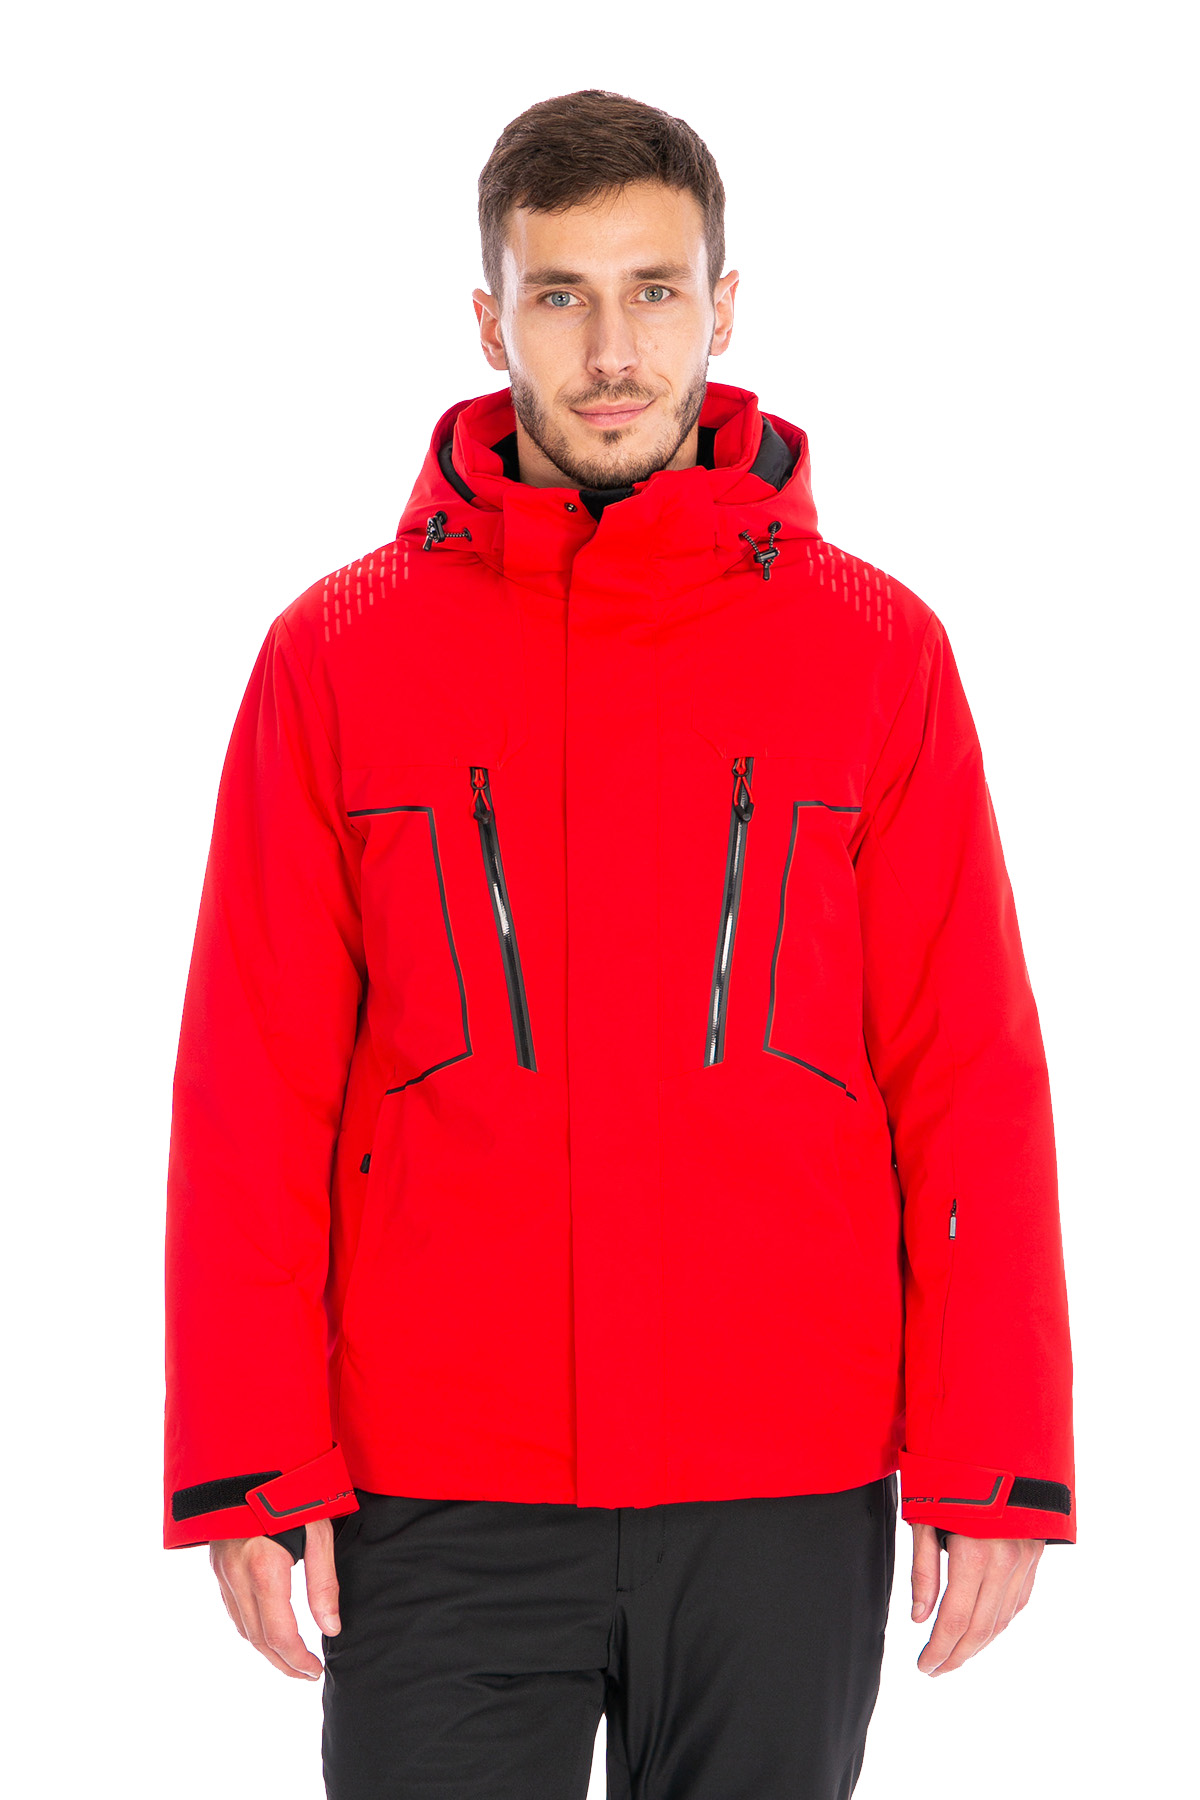 Мужская горнолыжная Куртка Lafor Красный, 767013 (54, xxl)